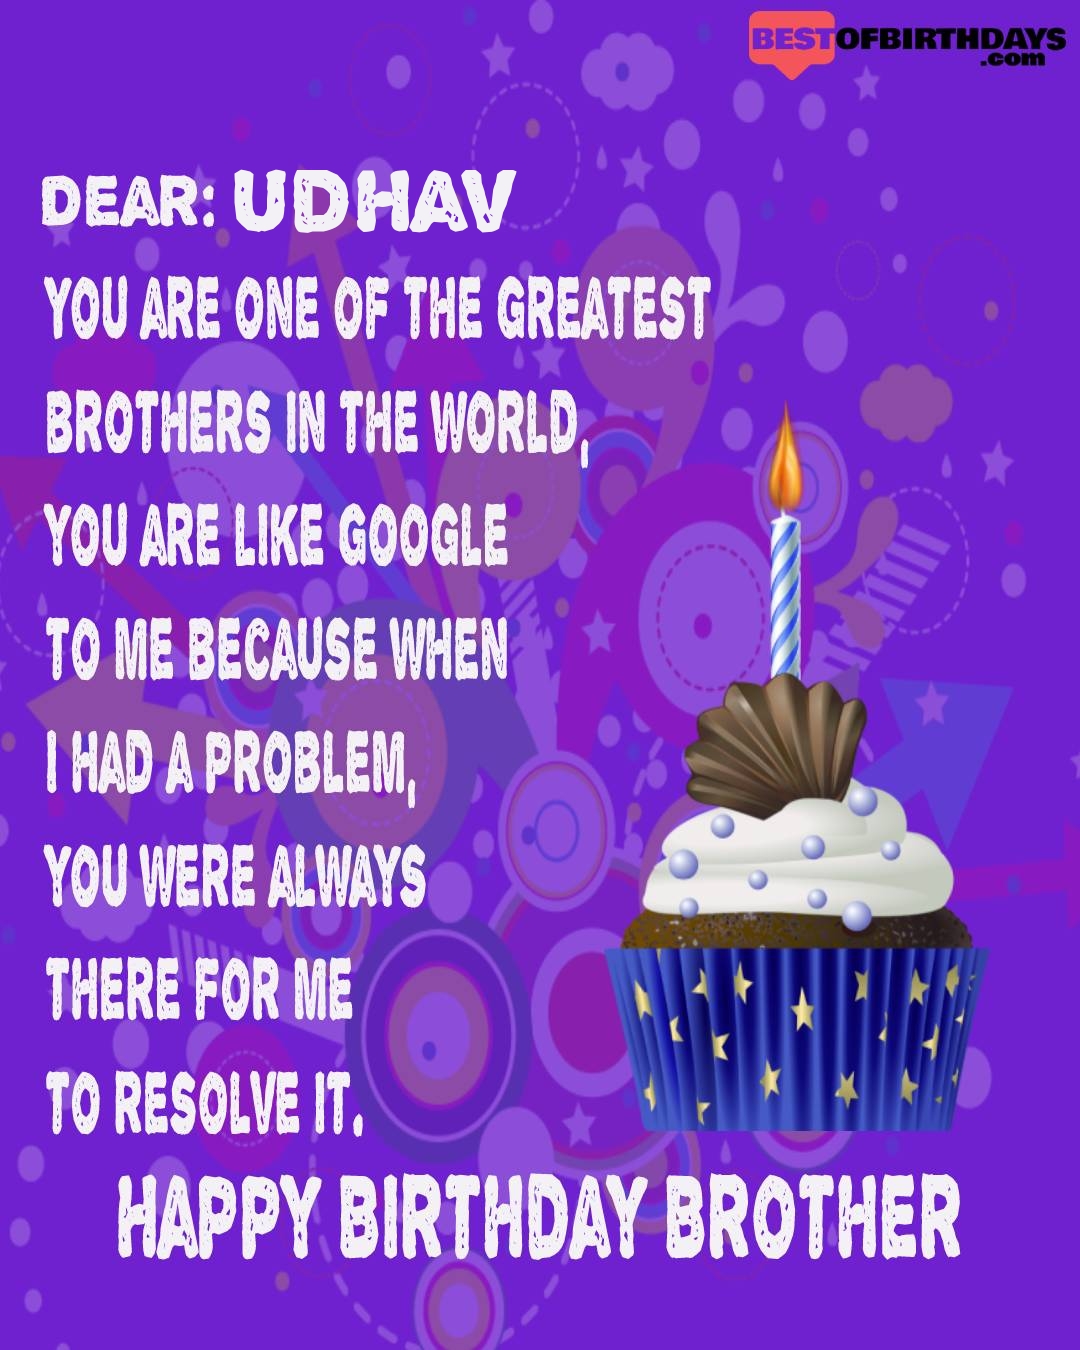 Happy birthday udhav bhai brother bro